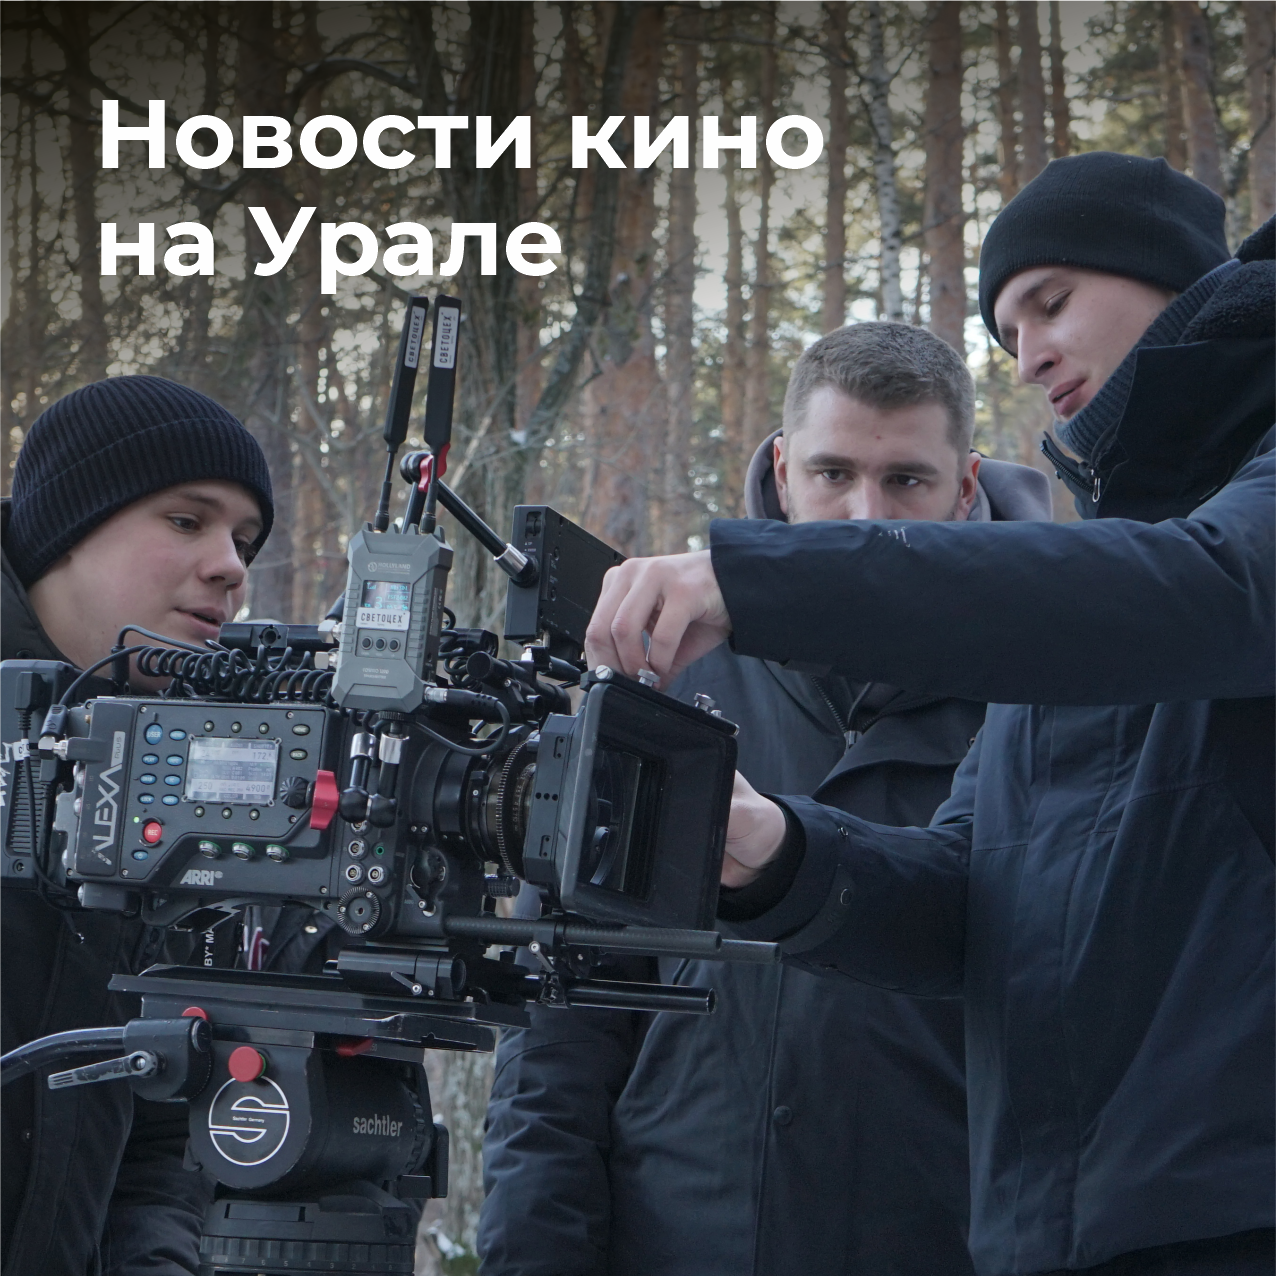 СК-дайджест: новый фильм киностудии, док про Крапивина в Тюмени, дедлайны фестивалей